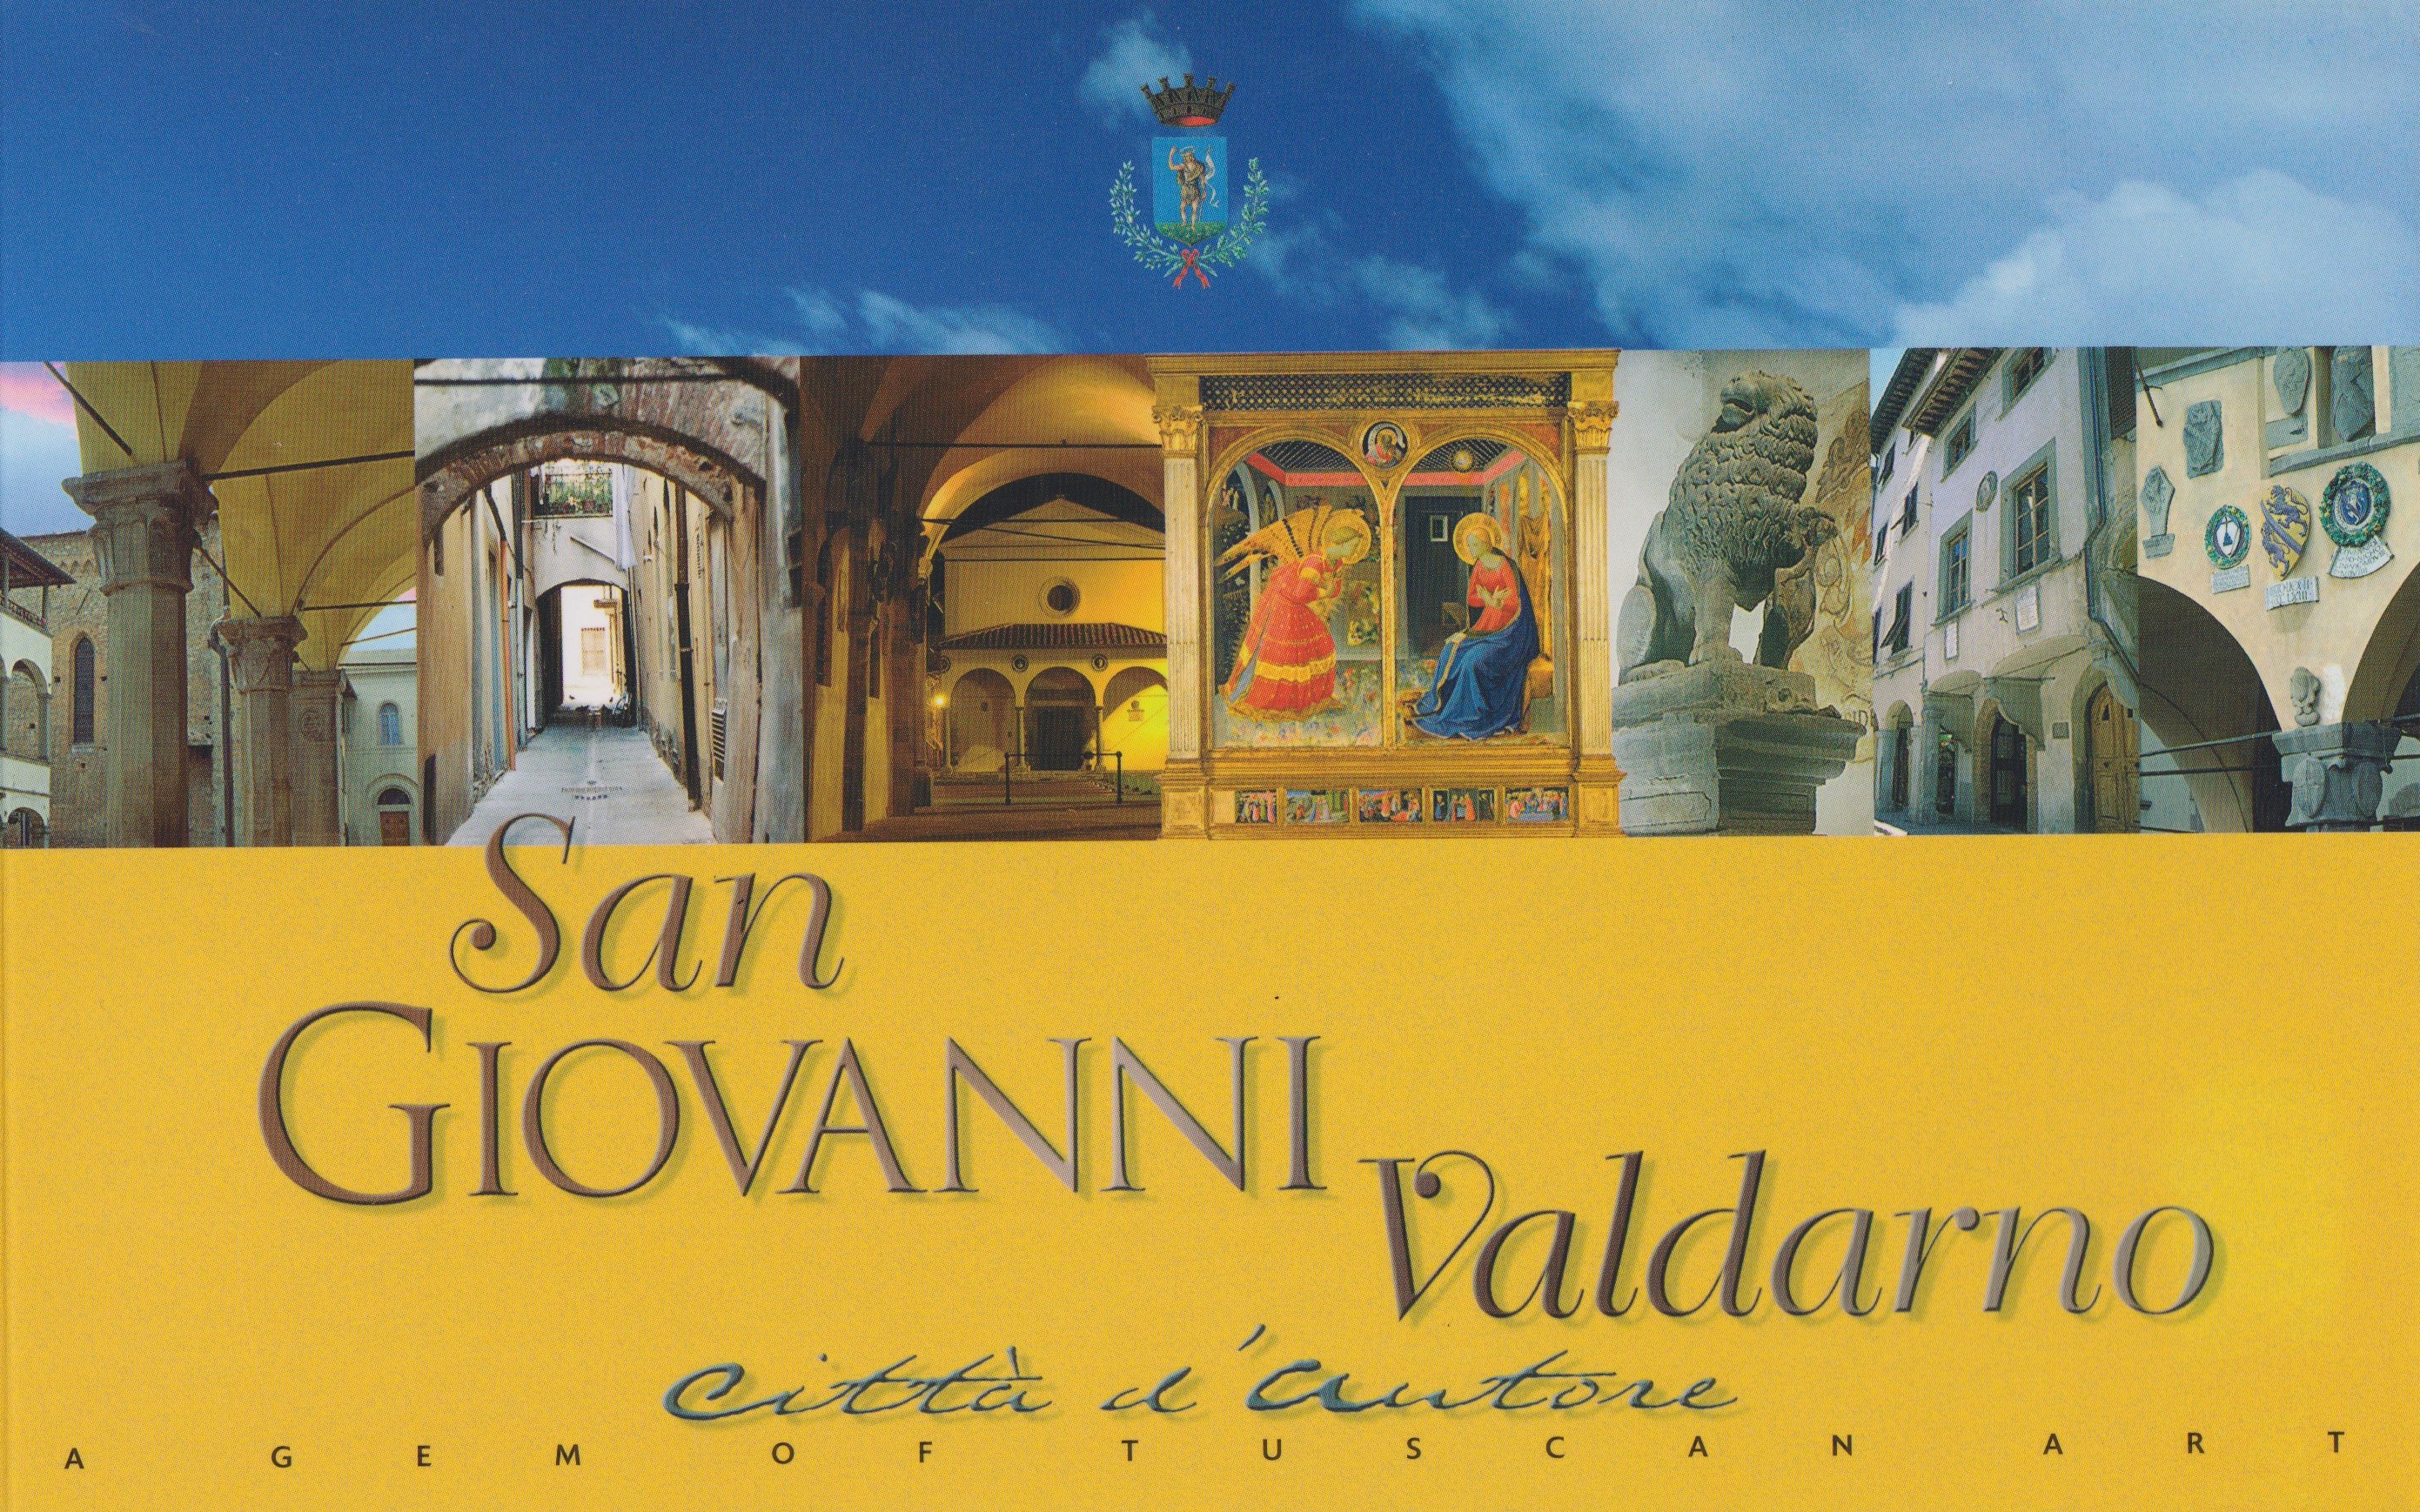 Guida turistica di San Giovanni Valdarno – ITA/ENG